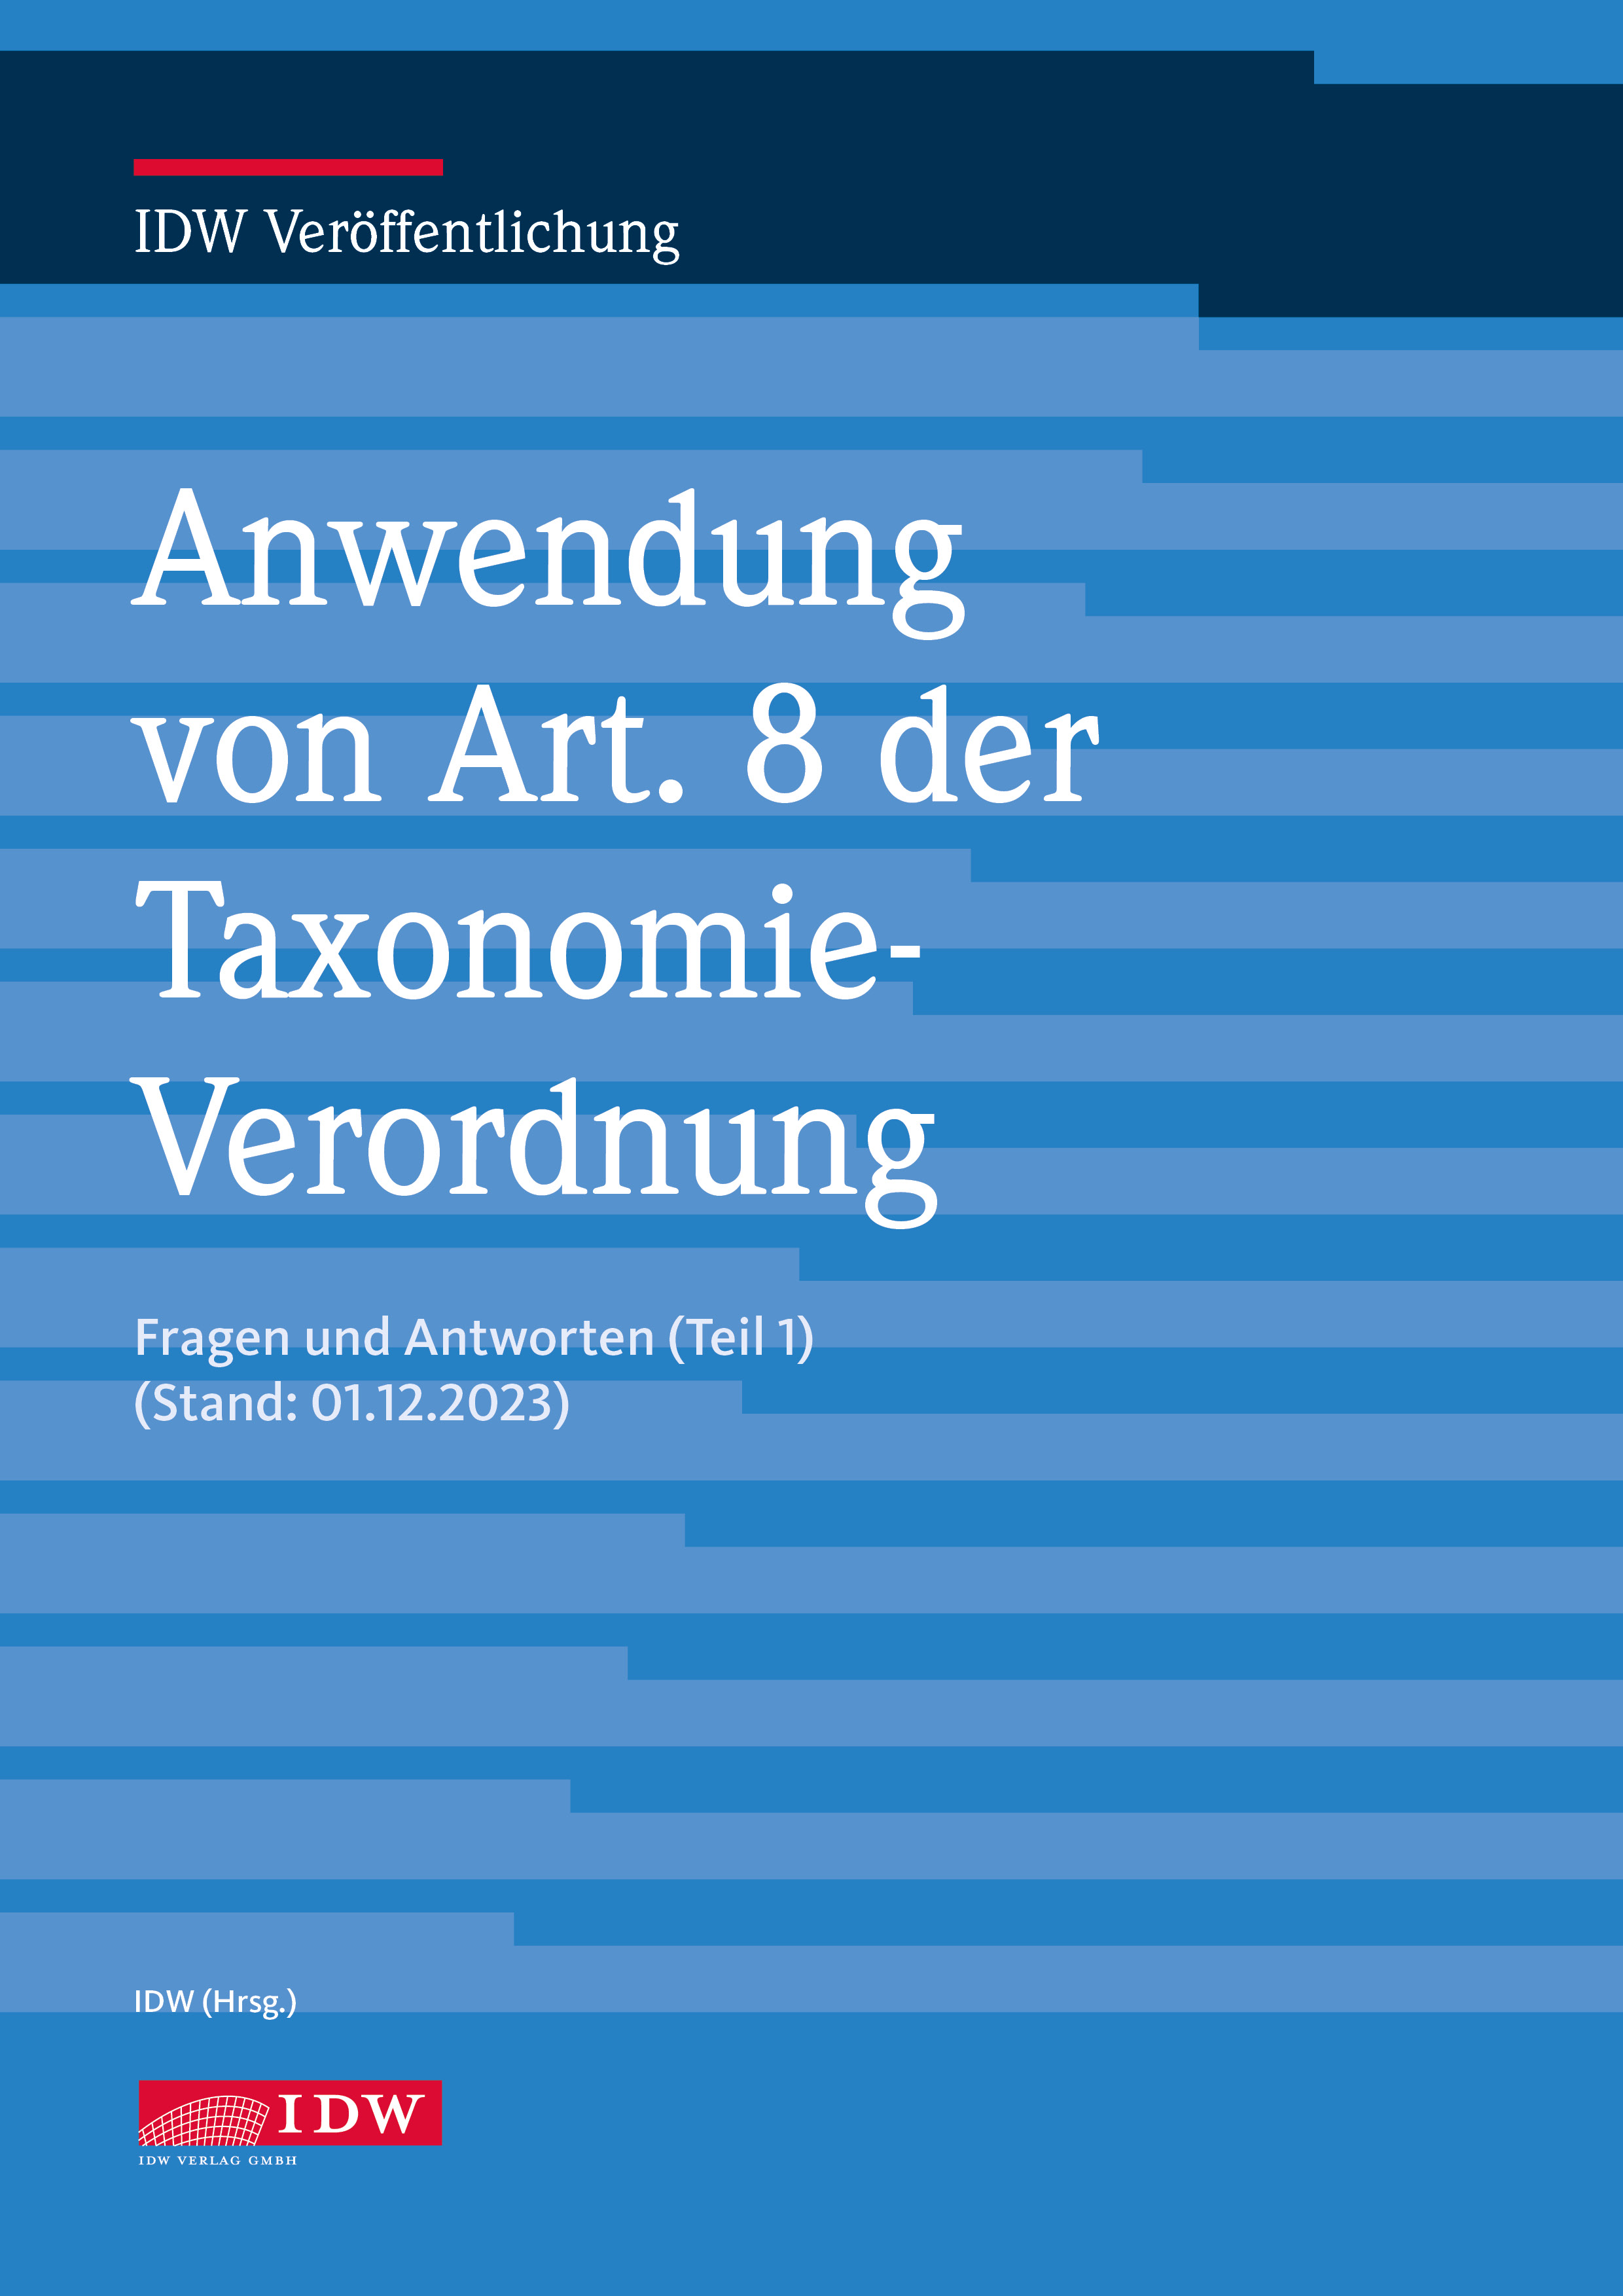 Q&A Fragen und Antworten: Anwendung von Art. 8 der Taxonomie-Verordnung 